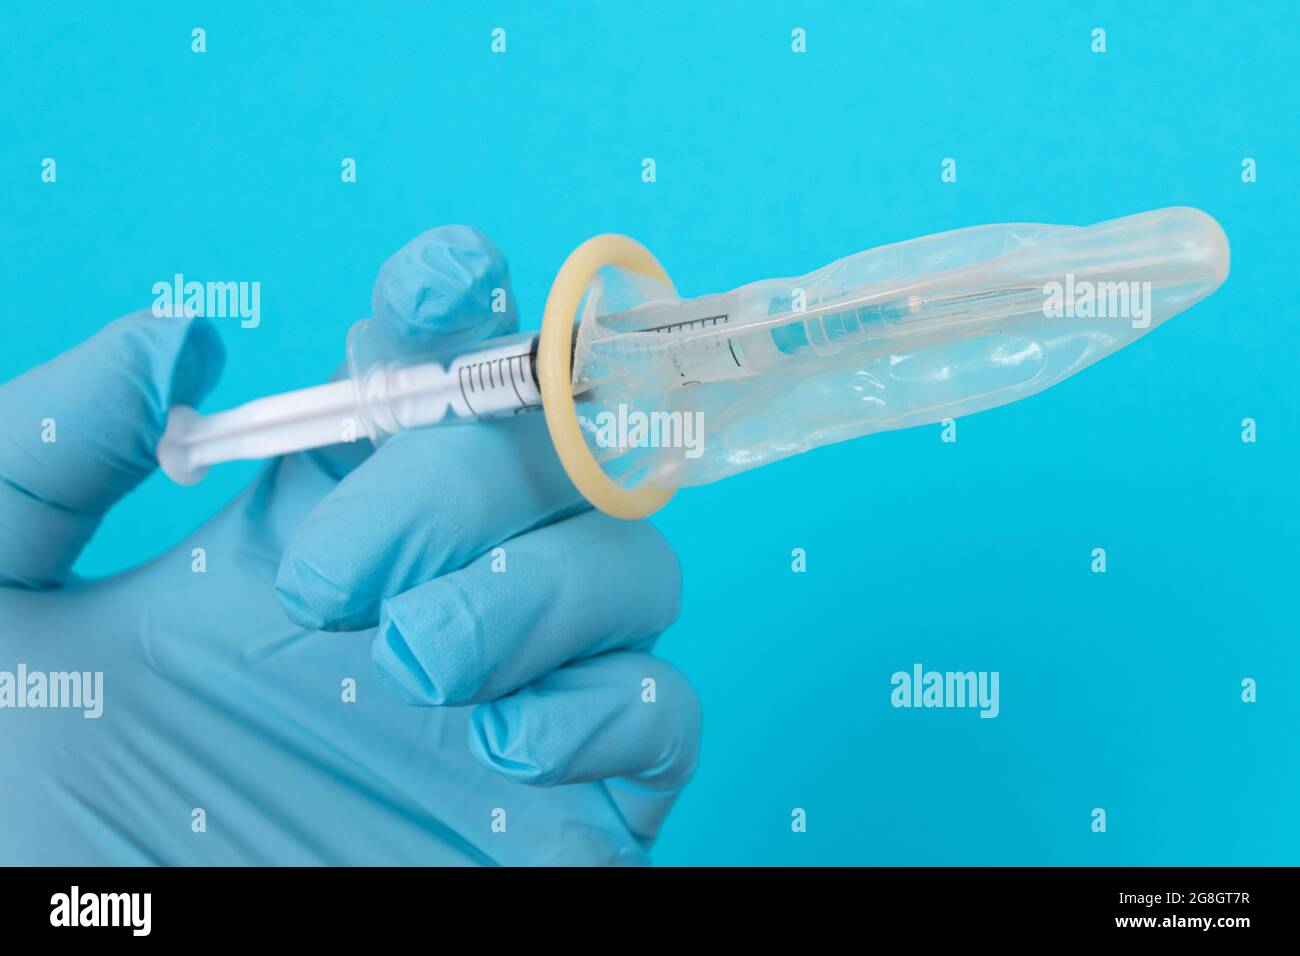 Vaccin sûr, anti-vaccin concept - seringue dans un condom tient dans une main avec un gant médical. Méfiance à l'égard de la vaccination. Immunité naturelle. Scepticisme à propos du vaccin. Liberté et droits de l'homme Banque D'Images